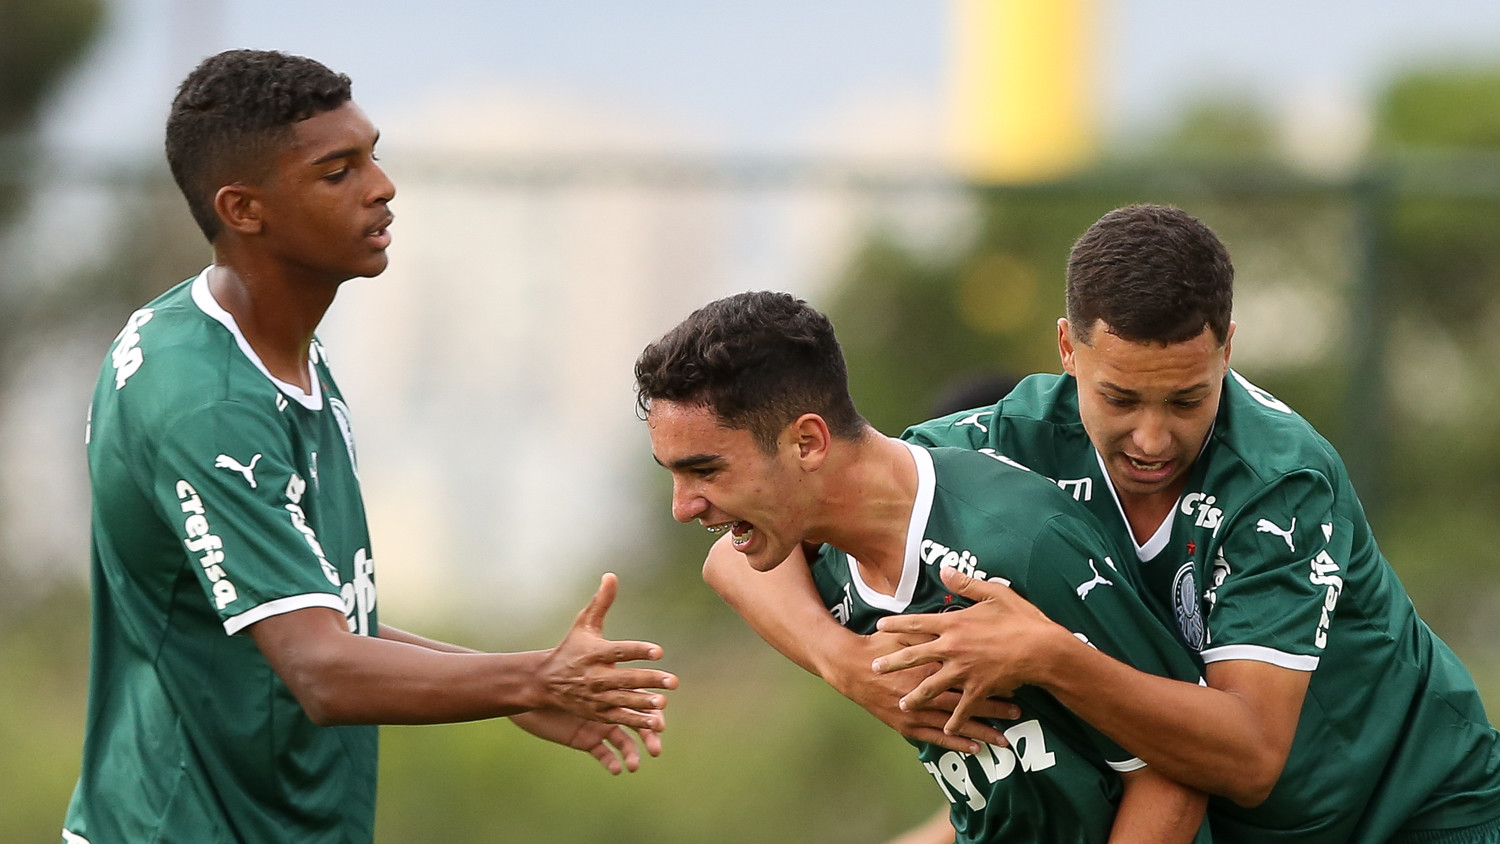 Palmeiras AO VIVO! Veja onde assistir ao jogo diante do São Paulo pela  final do Brasileirão Sub-17